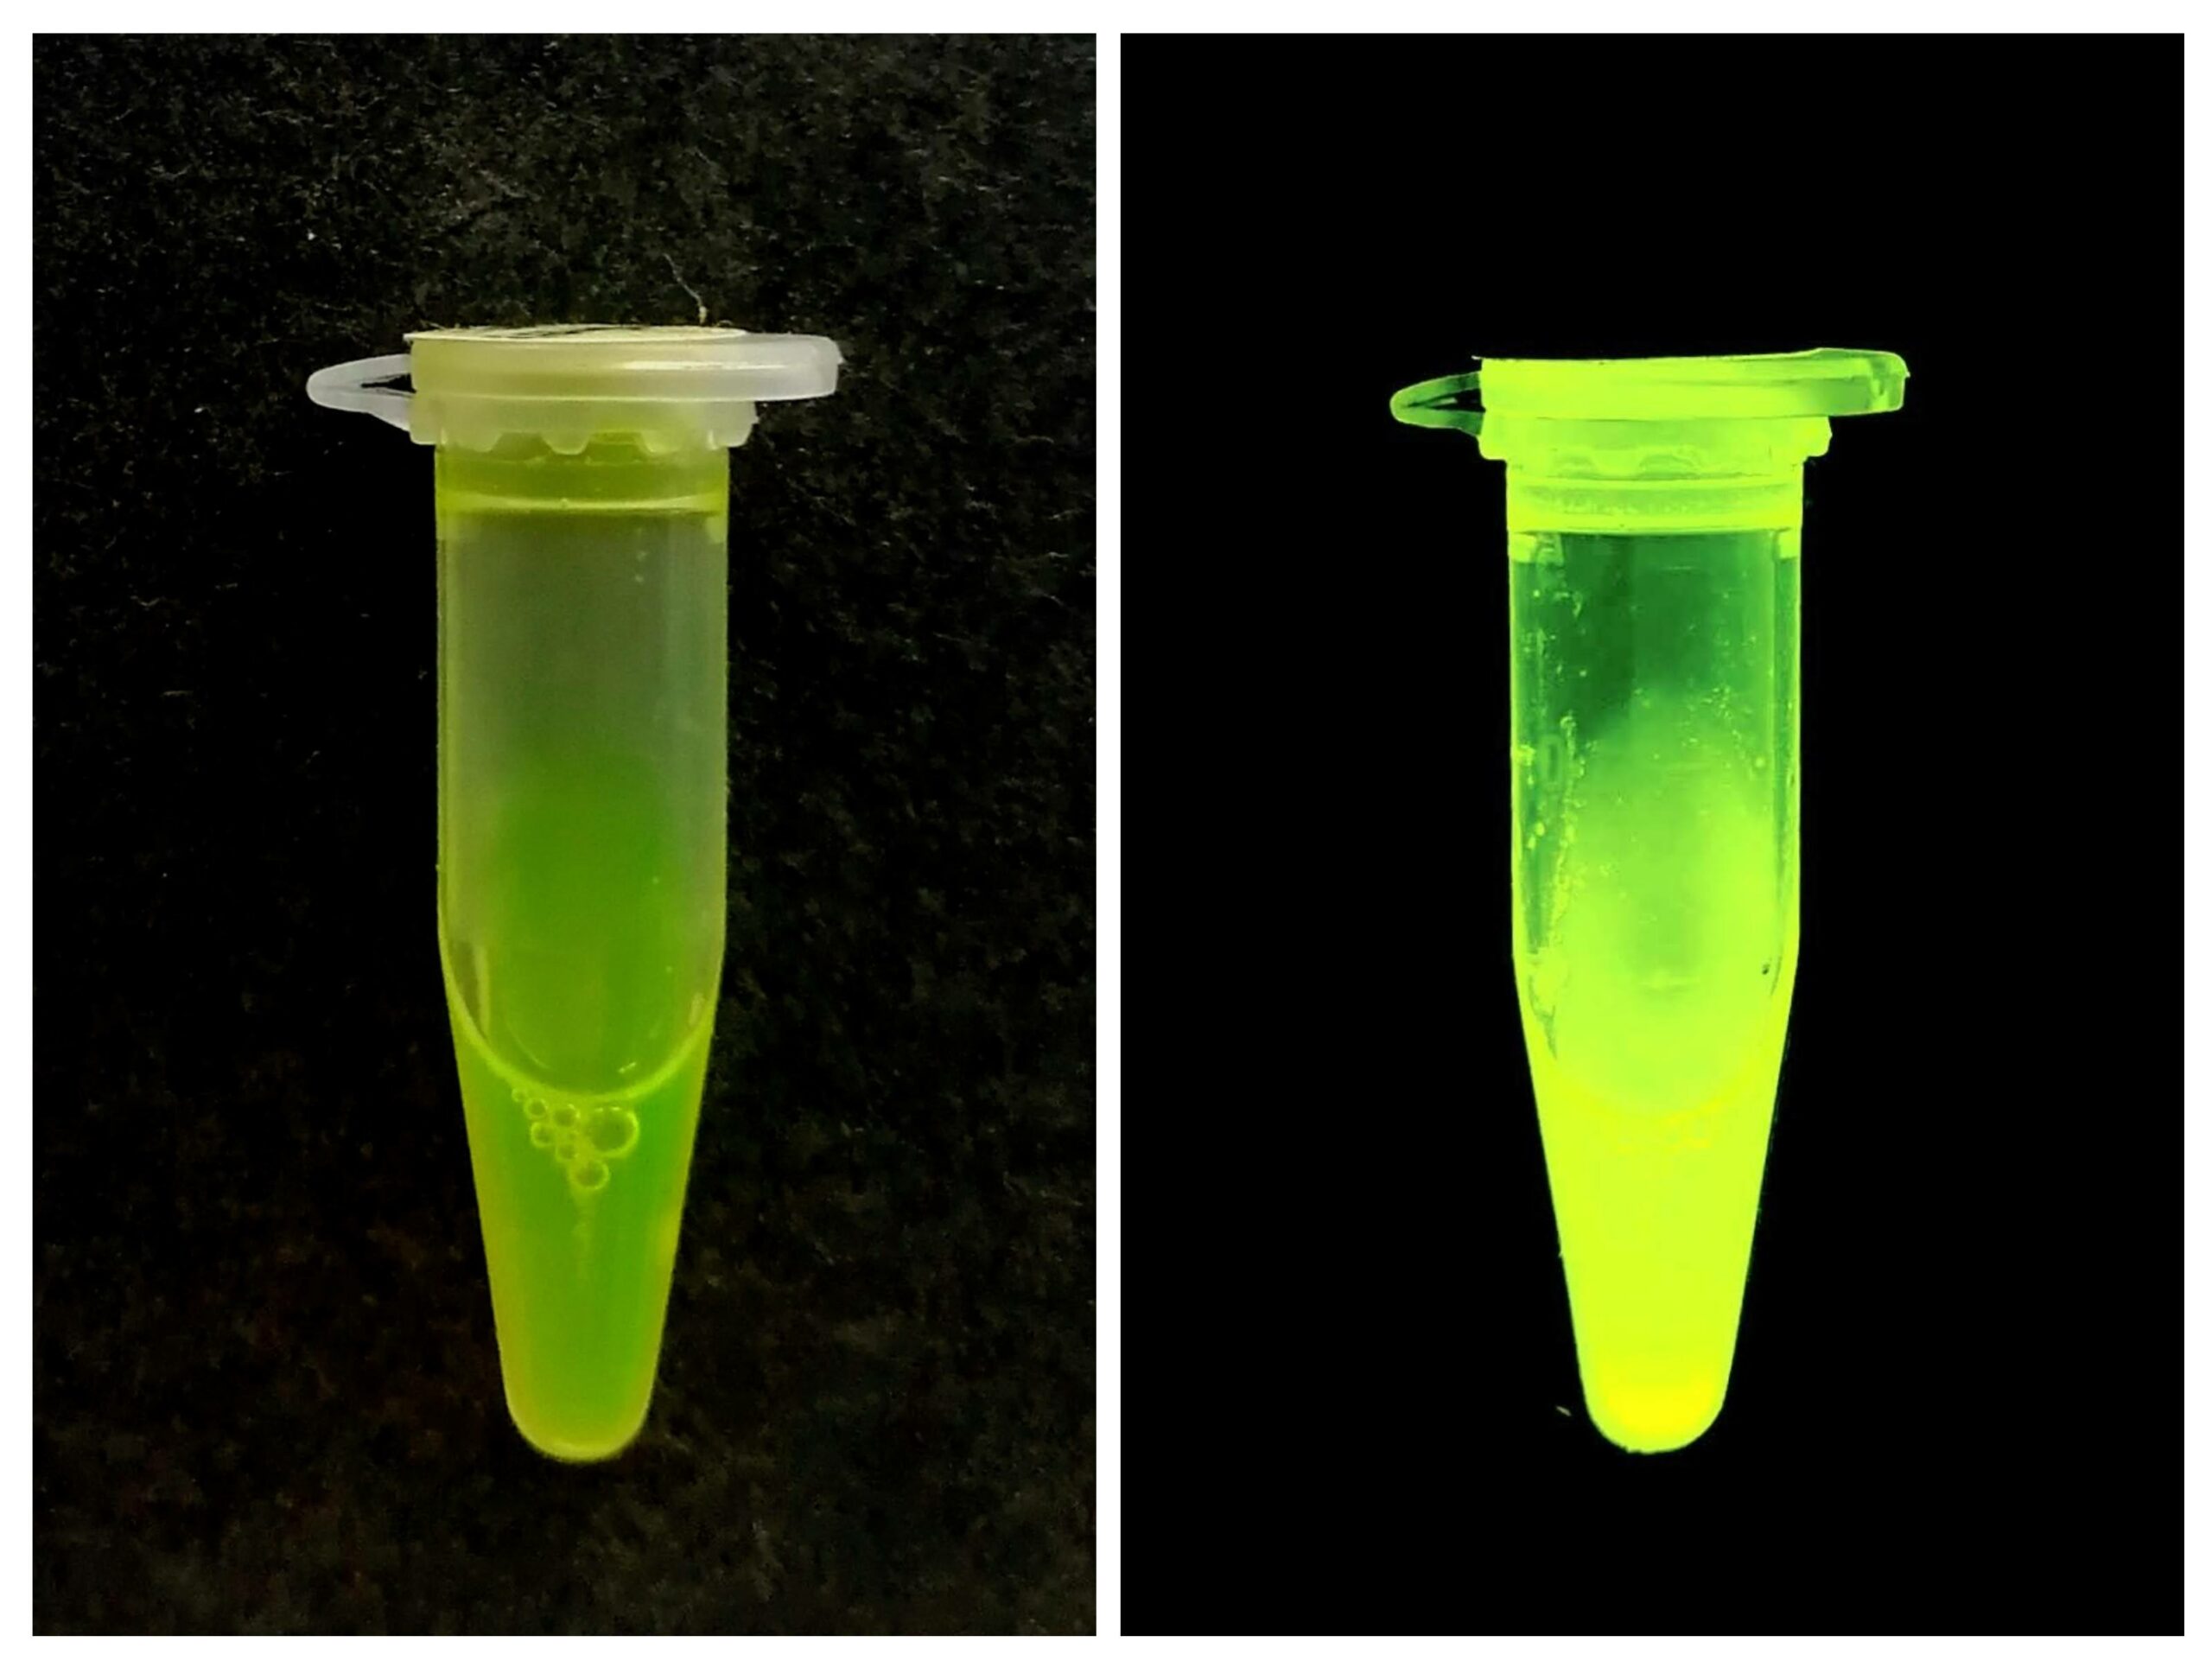 Tubes à essaie remplis de protéine pure et émettant sa fluorescence